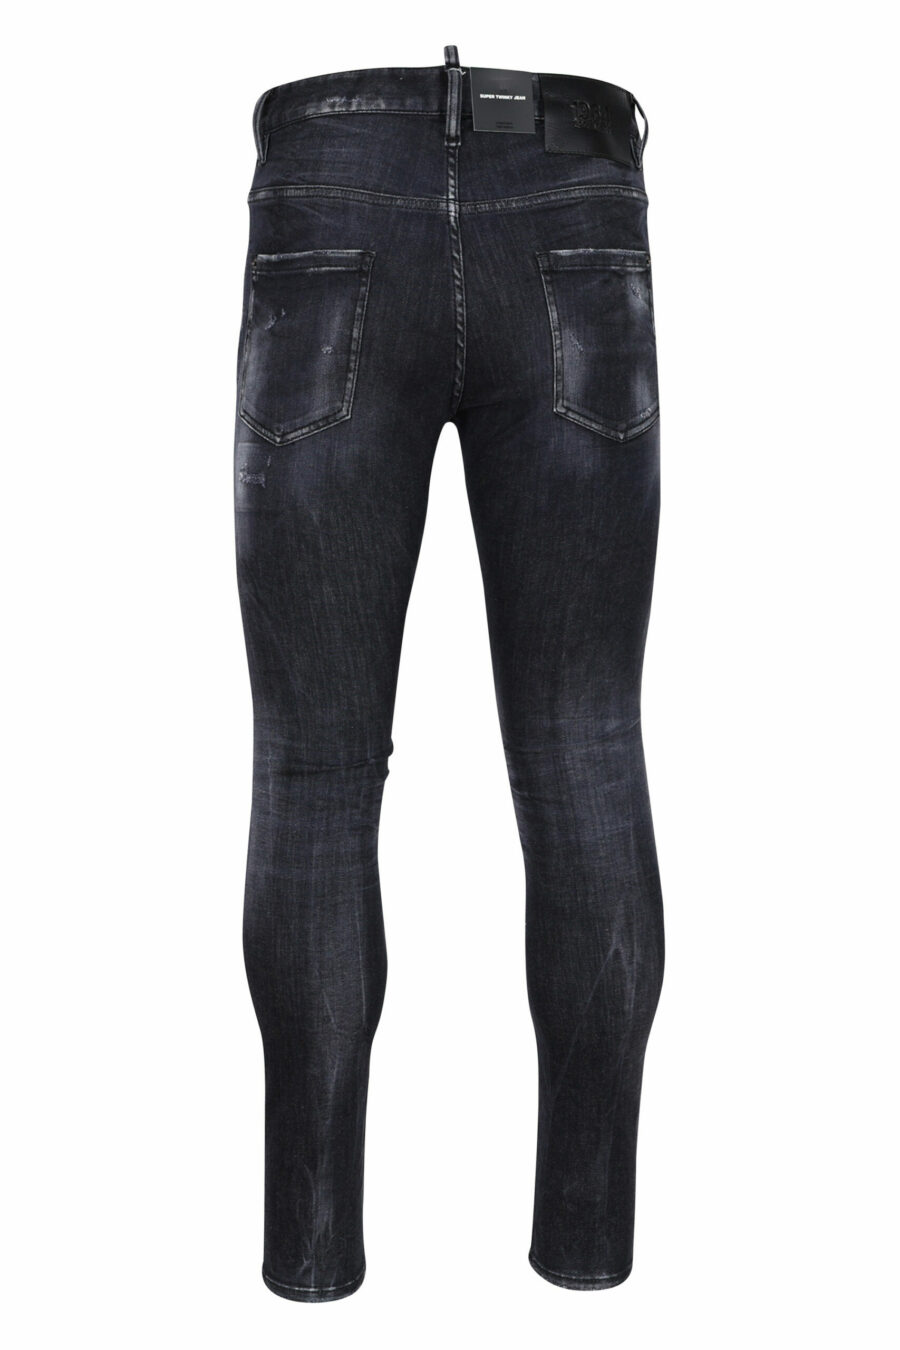 Jeans super twinkey noir semi-usé et déchiré - 8054148103088 2 échelles